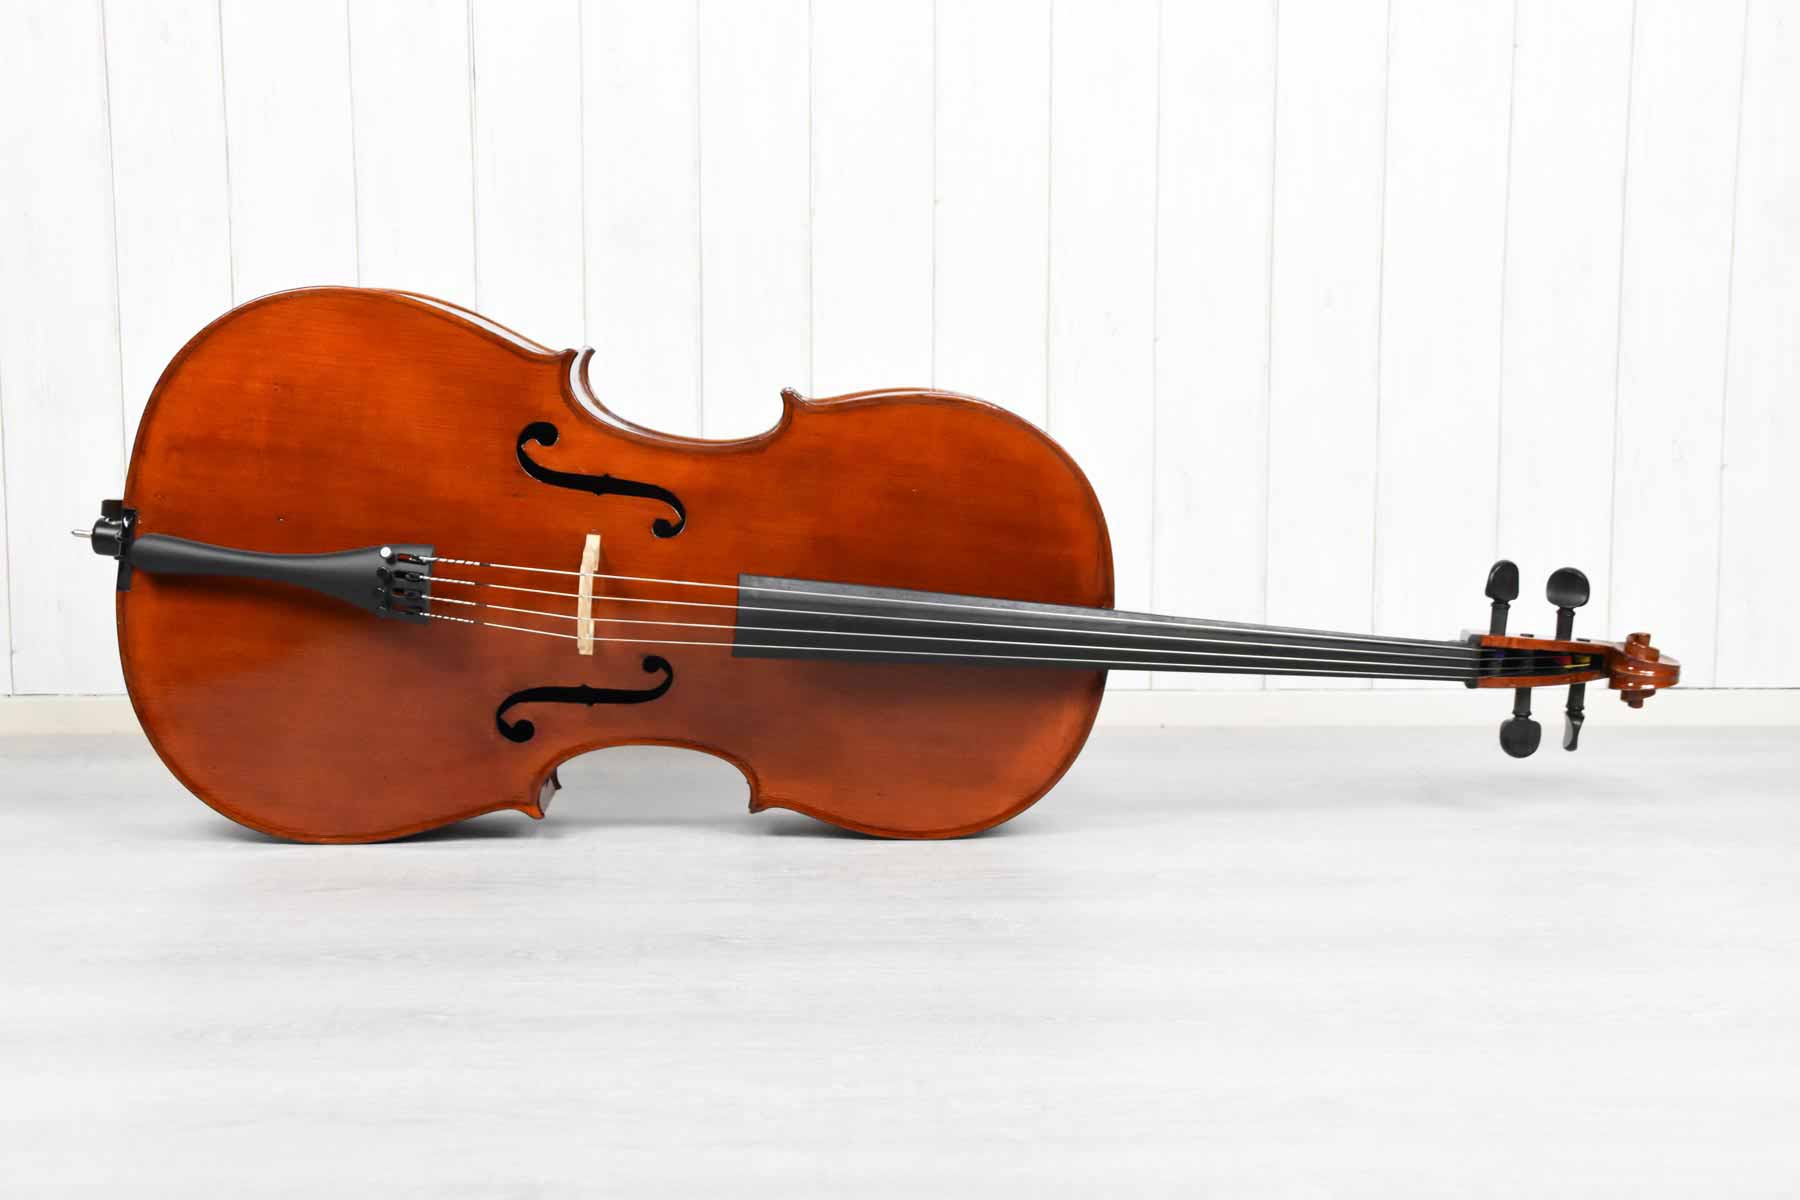 Vergemakkelijken Ongemak Zorgvuldig lezen 4/4 Cello Duits 1950 kopen? Music All In